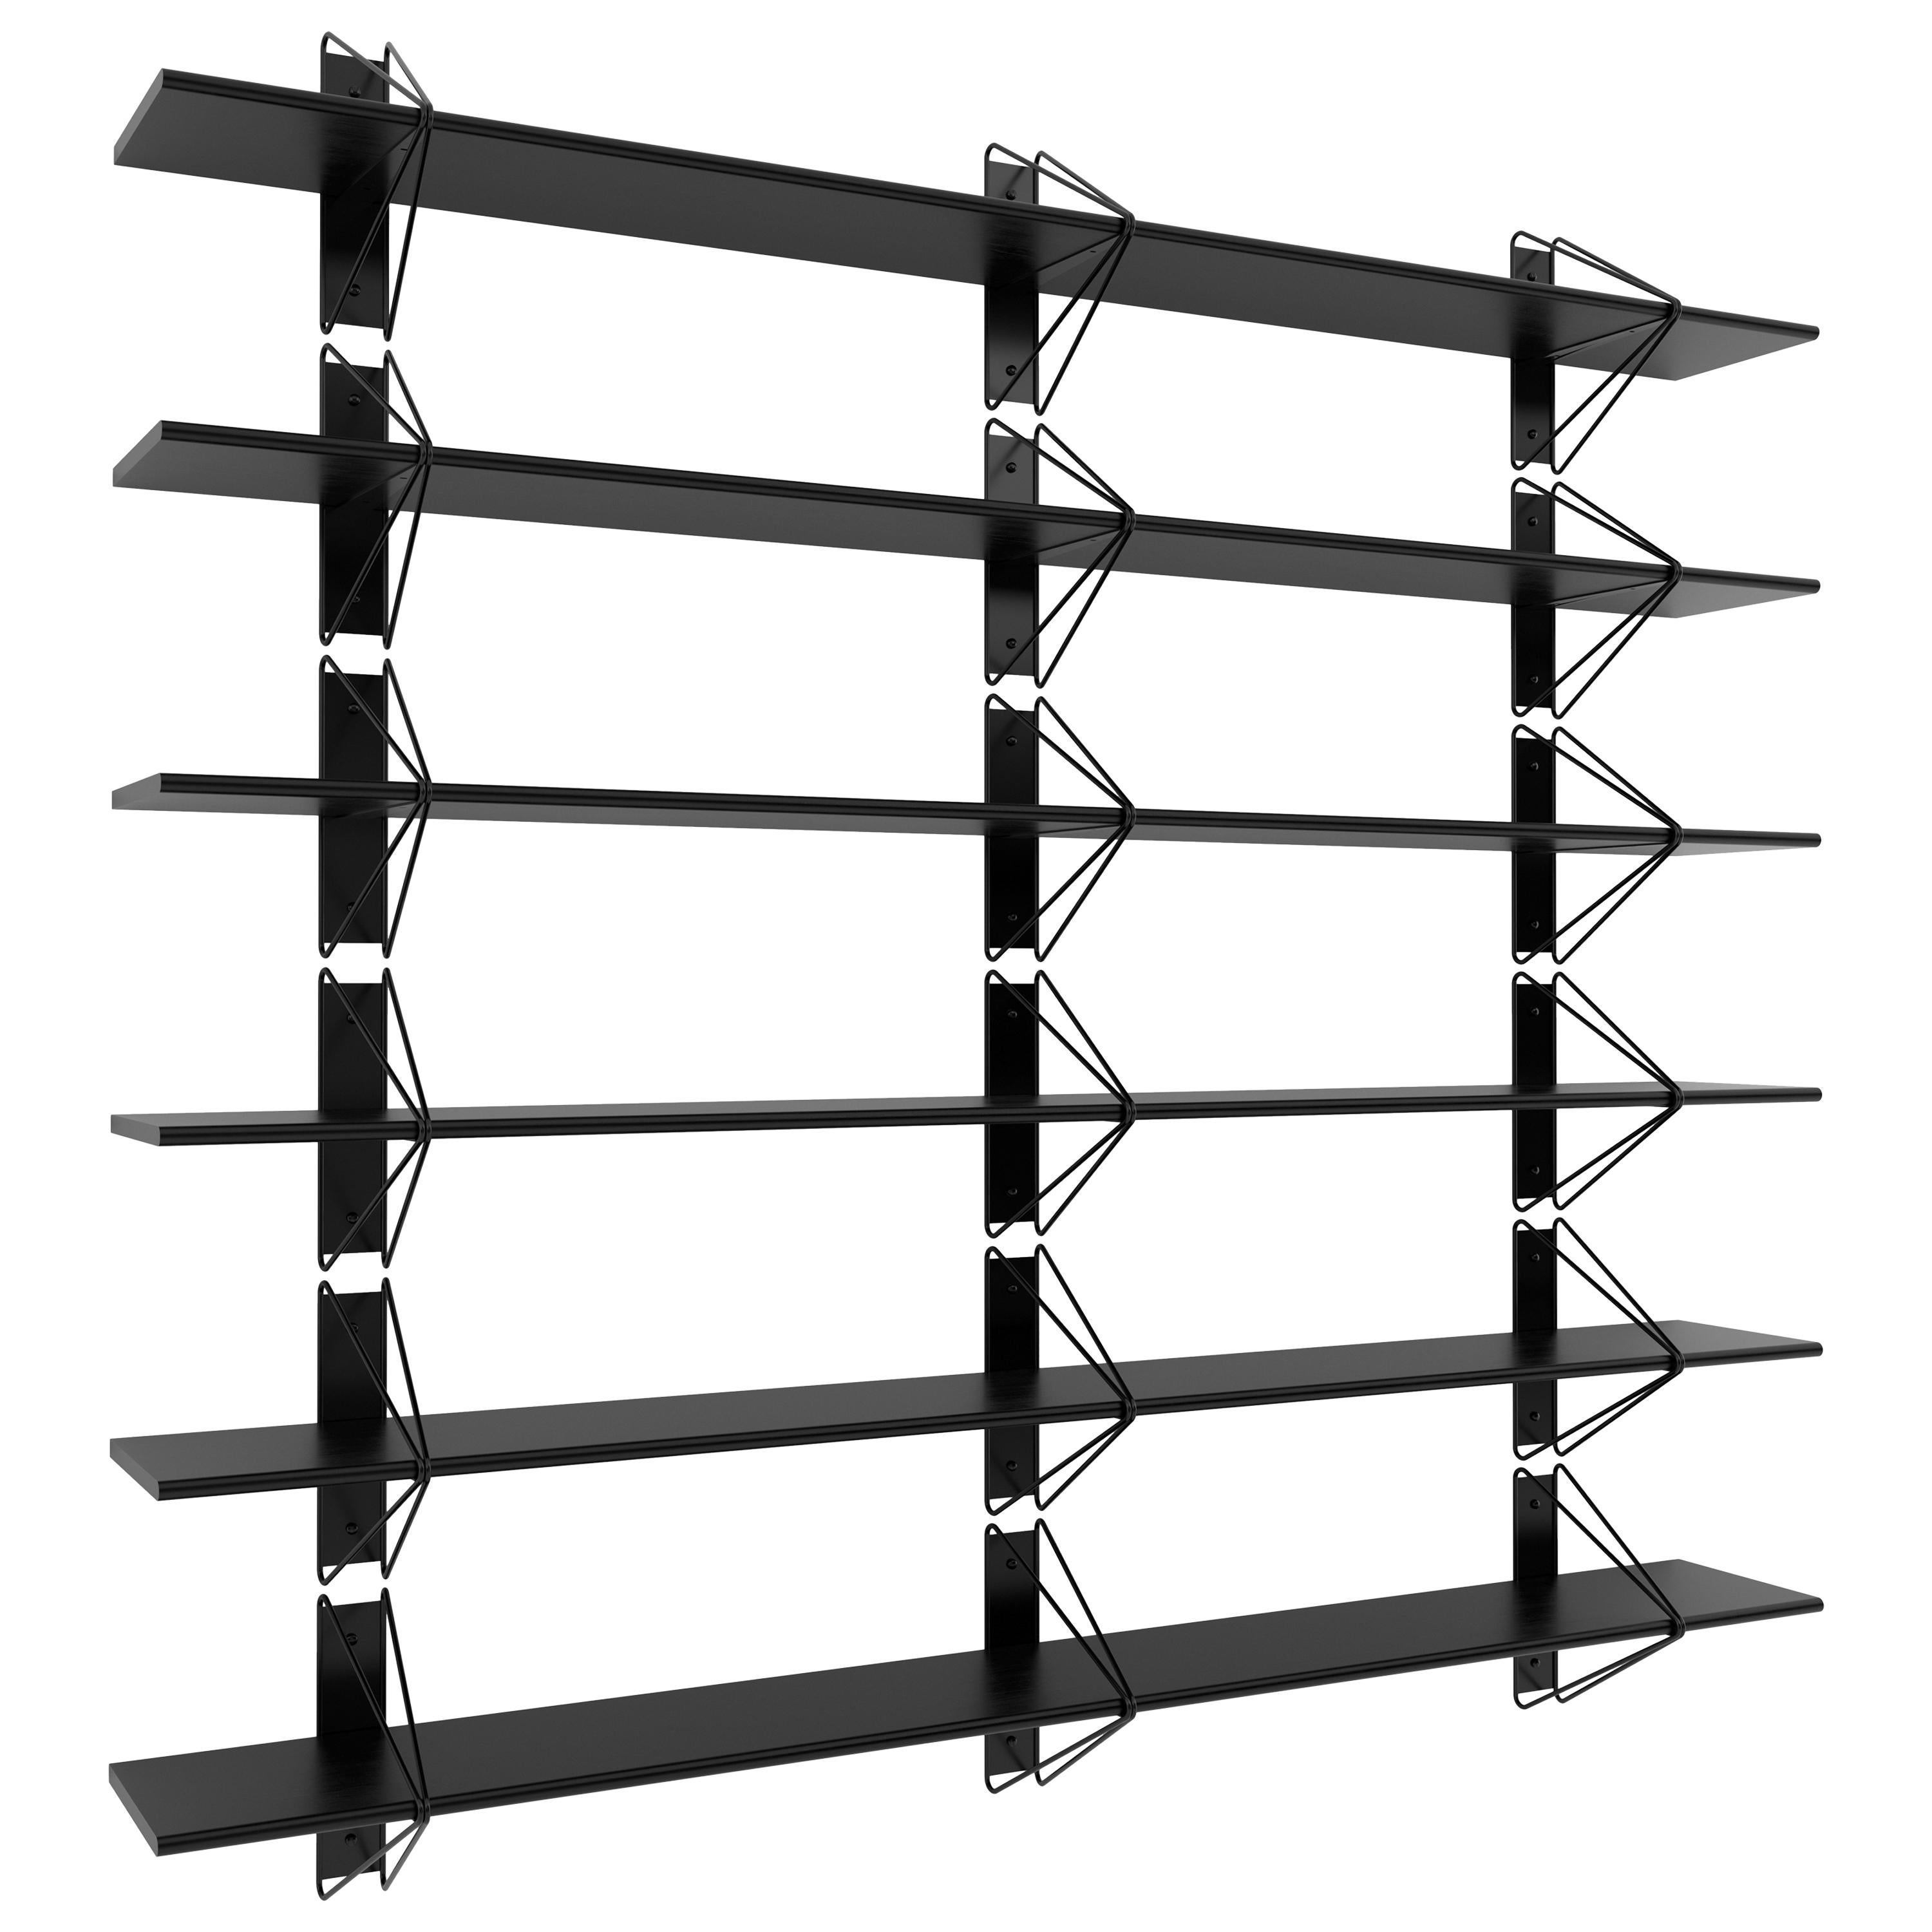 Set of 6 Strut Shelves from Souda, Black, Modern, Made to Order